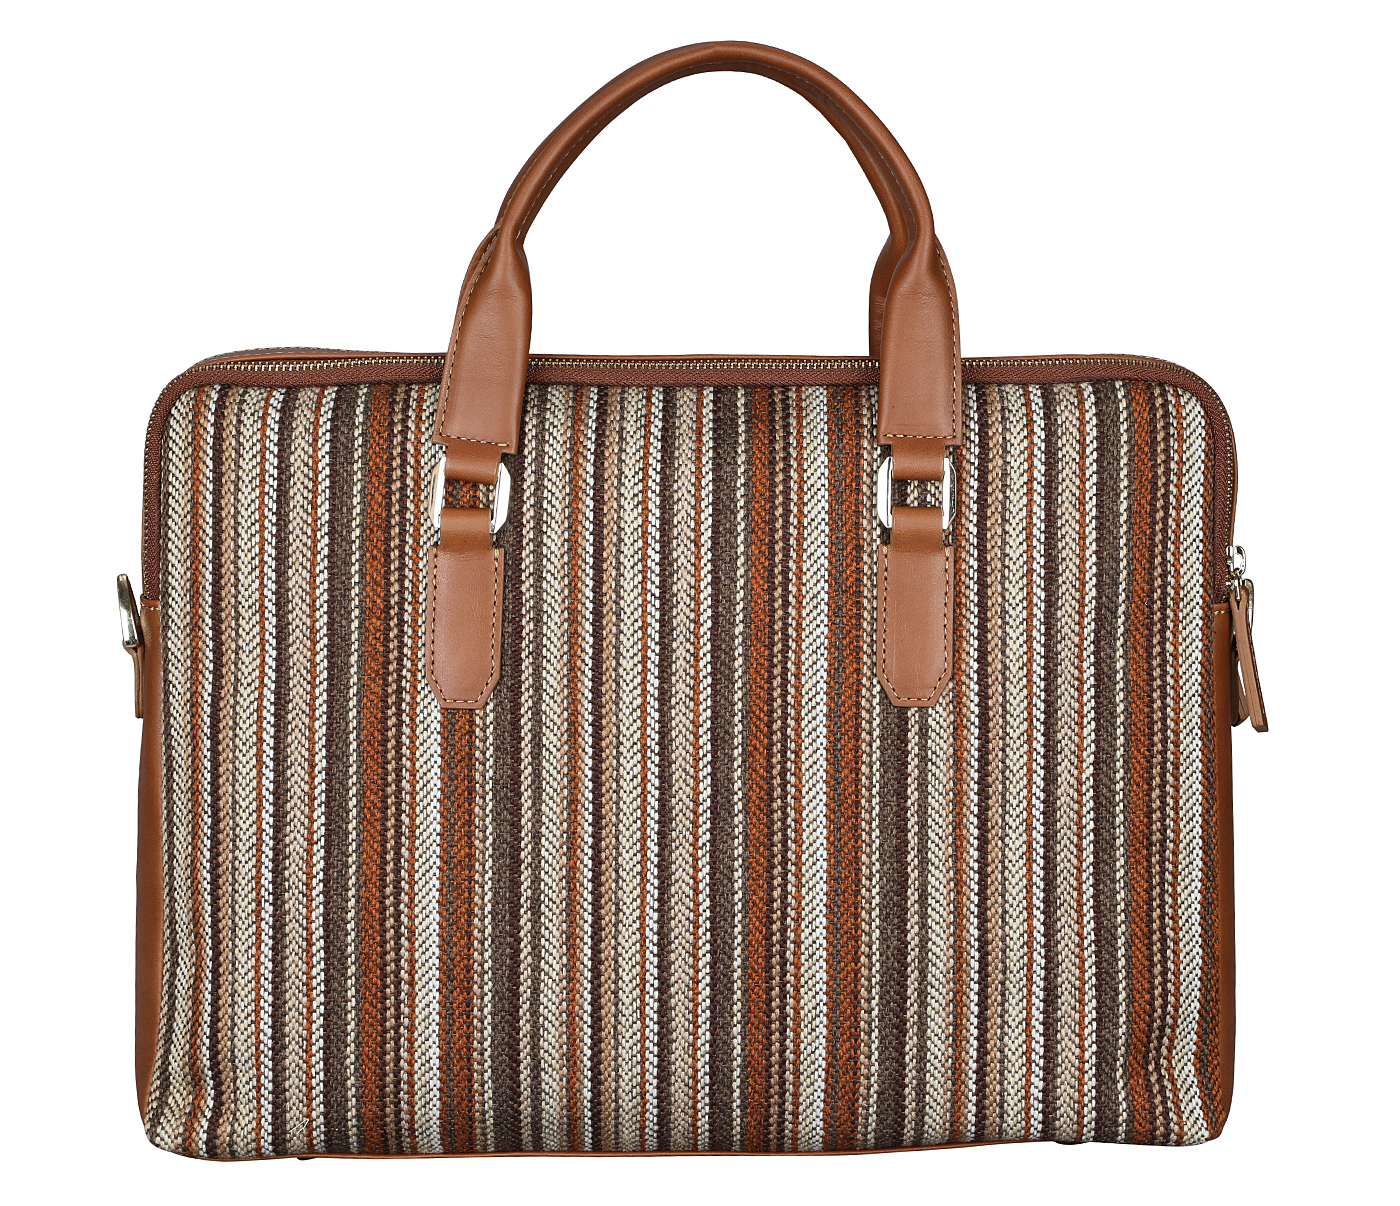 F79-Alvaro-Laptop cum portfolio bag in Multi colored Stripes print fabric with Genuine Leather combination - Tan